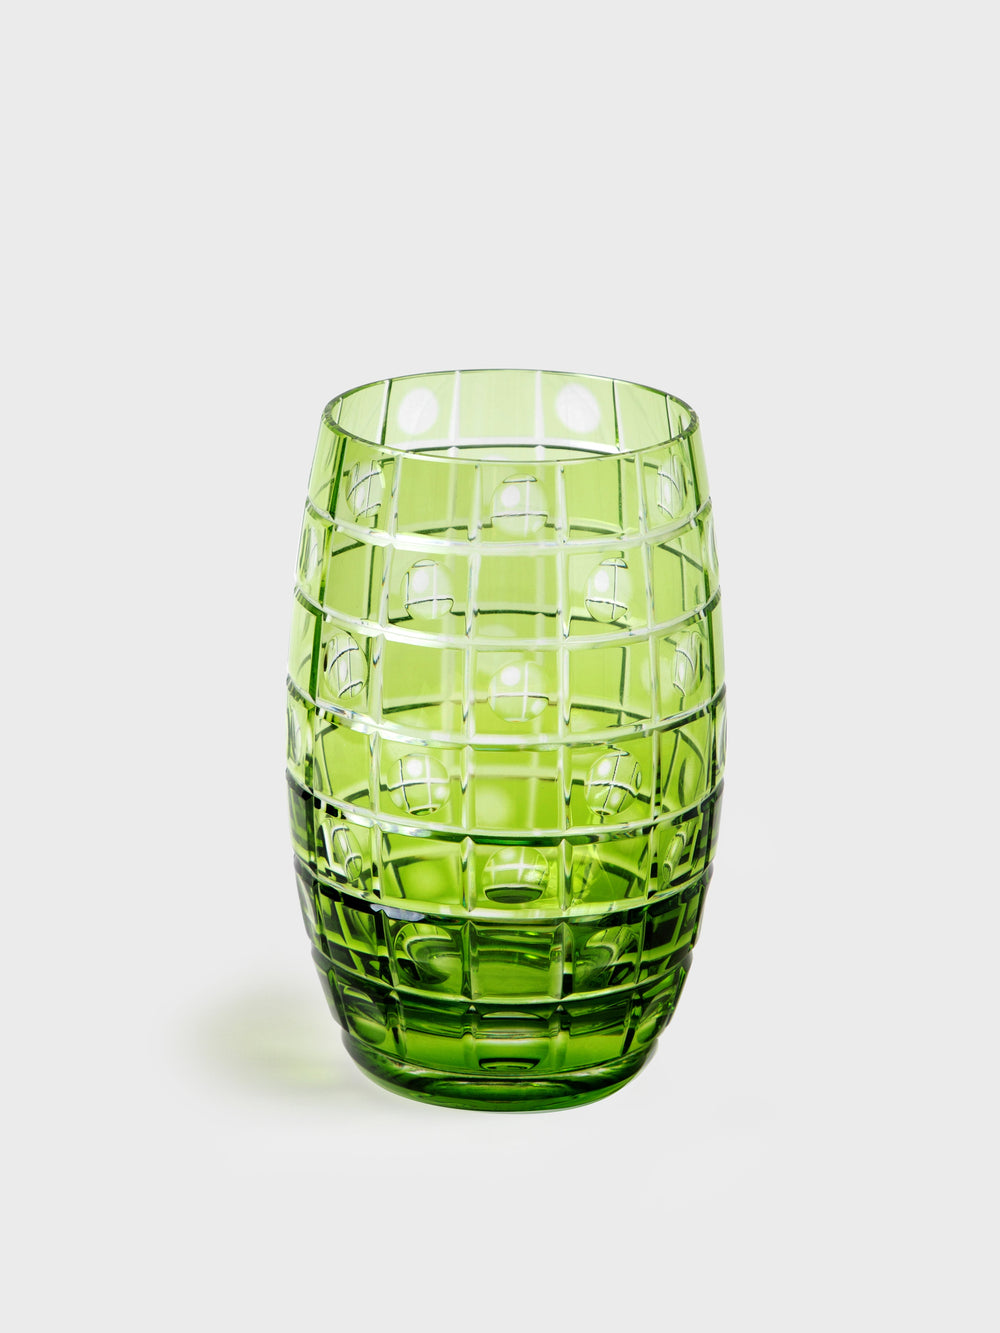 Tania Bulhoes Long Glass Jacaranda Green